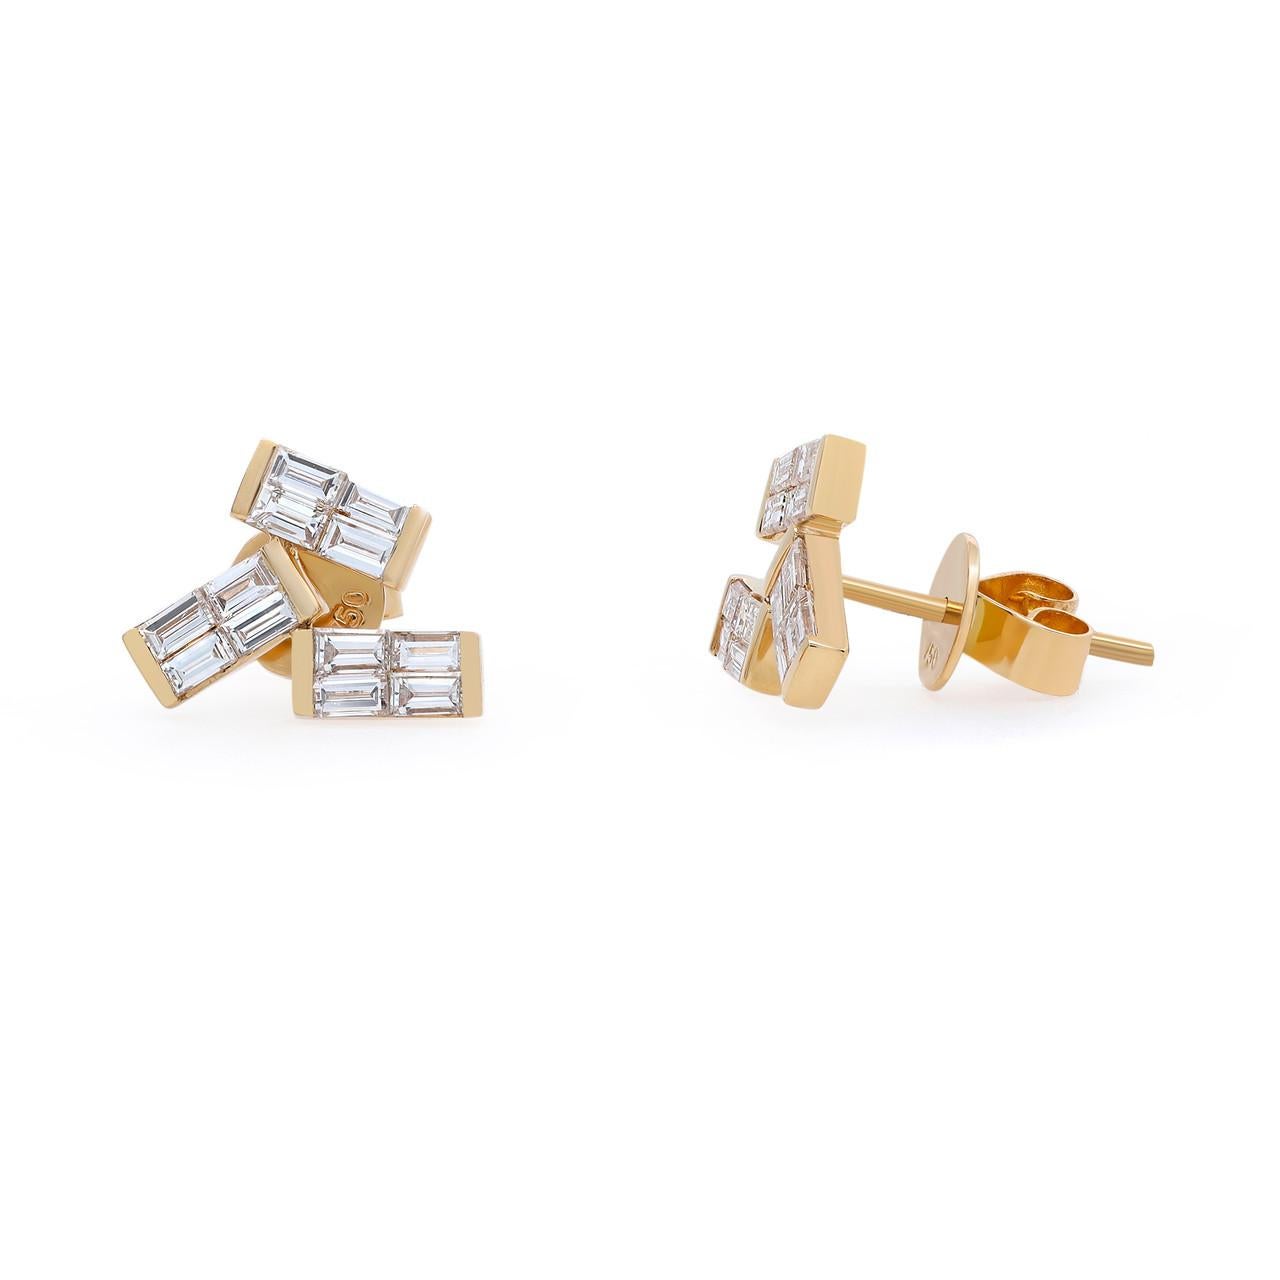 Wir präsentieren die schicken und zeitlosen 0,83 Karat Baguette-Diamant-Ohrstecker aus 18 Karat Gelbgold. Diese exquisiten Ohrringe sind mit einem Cluster aus atemberaubenden Diamanten im Baguetteschliff von insgesamt 0,83 Karat besetzt. Die